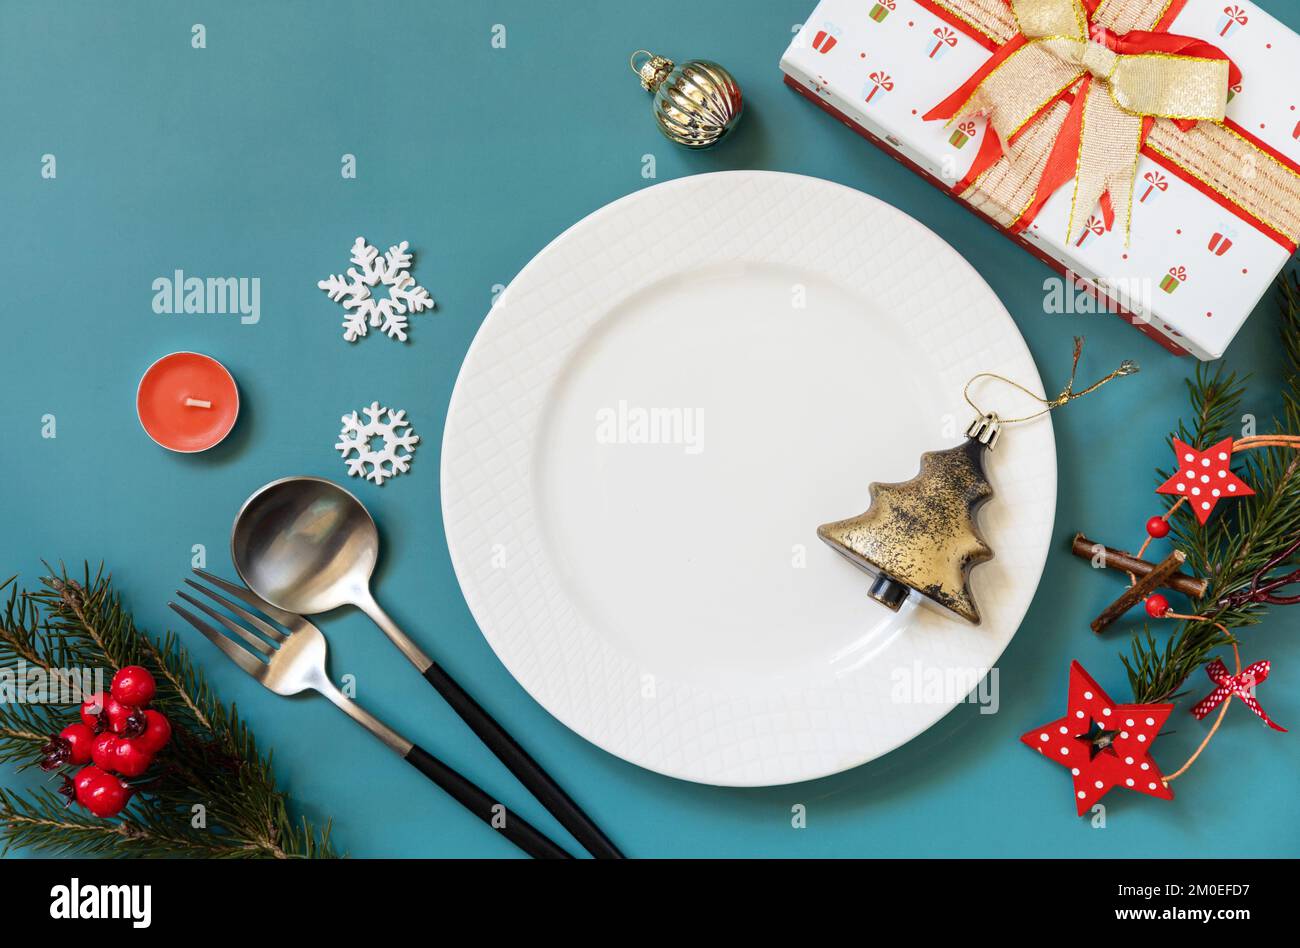 Flach liegender Weihnachtstisch mit Teller, Besteck, Geschenkboxen und weihnachtsdekorationen auf grünem Hintergrund. Speicherplatz kopieren. Stockfoto